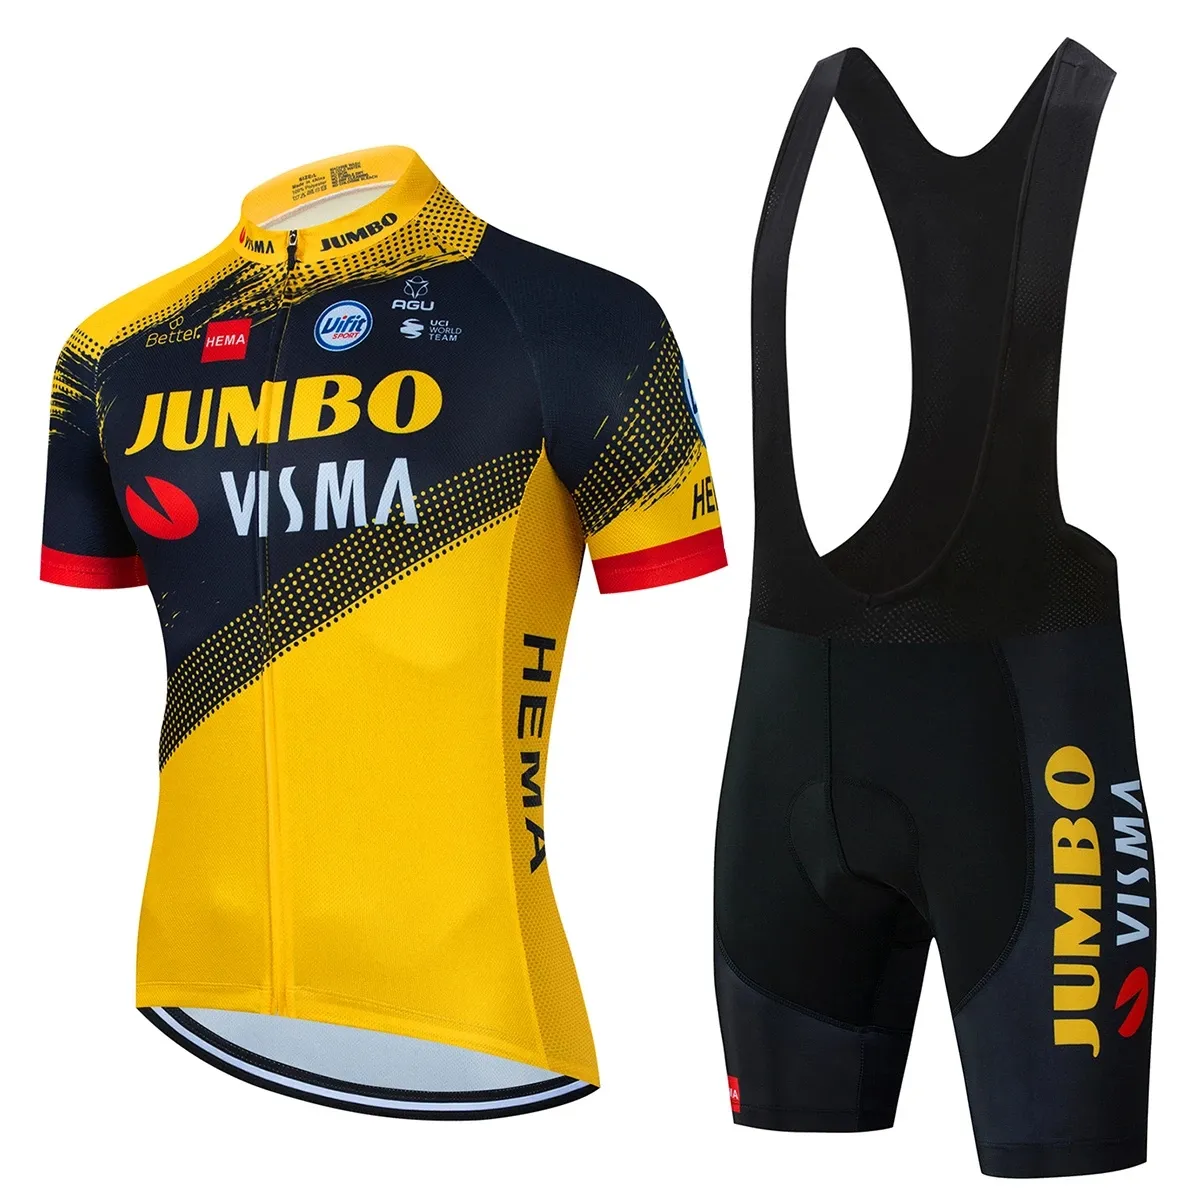 2022 Pro JUMBO VISMA bisiklet Jersey seti erkek bisiklet giyim yol bisikleti gömlek takım elbise bisiklet önlüğü şort MTB giyim maillot Culotte